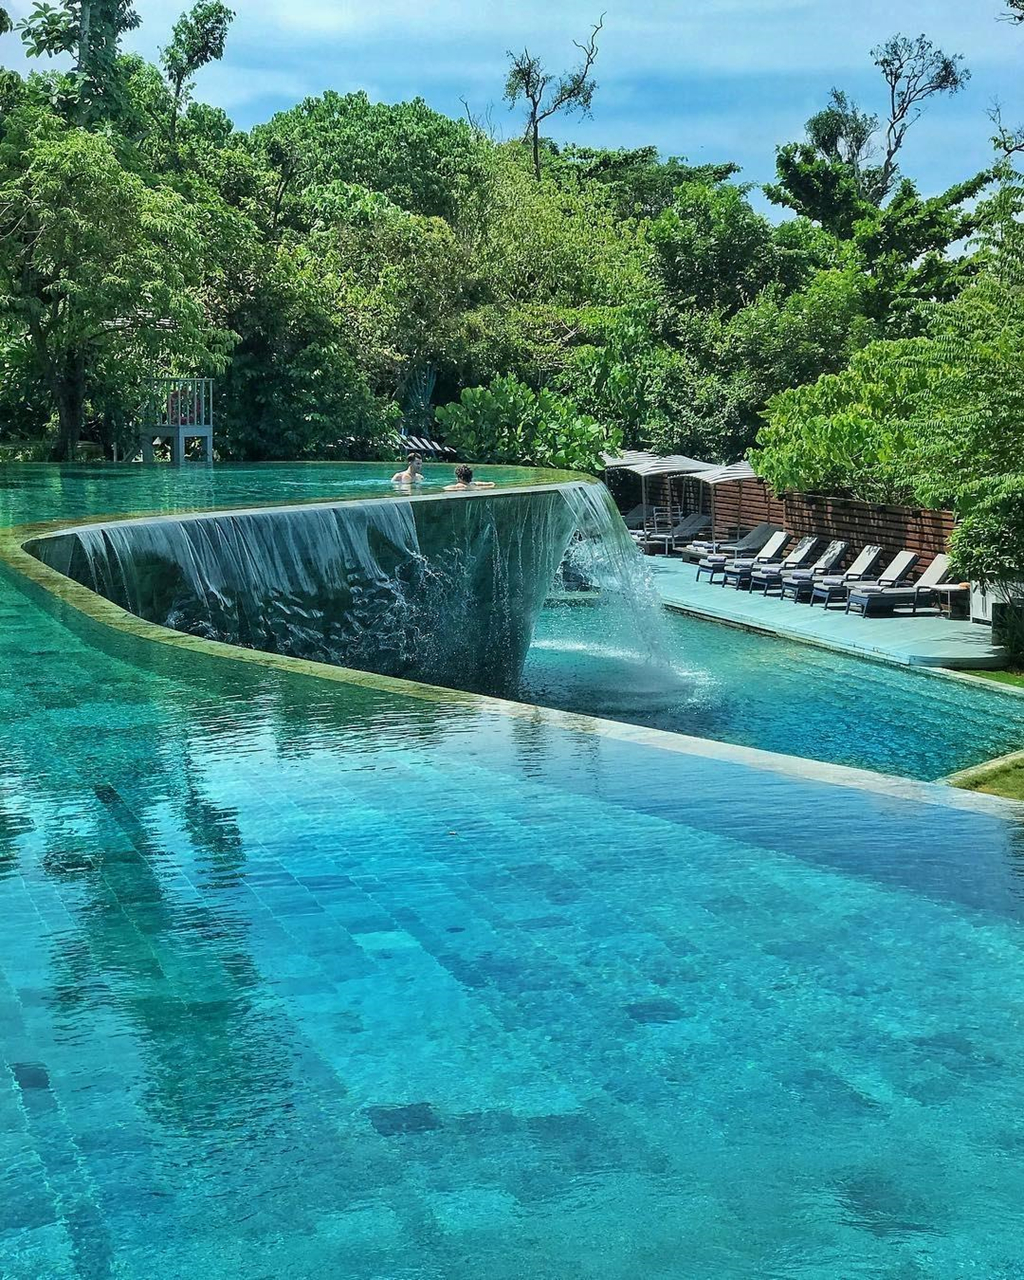 Hồ bơi vô cực như thác nước dành cho các ngôi sao giữa lòng Thái Lan Flightbook